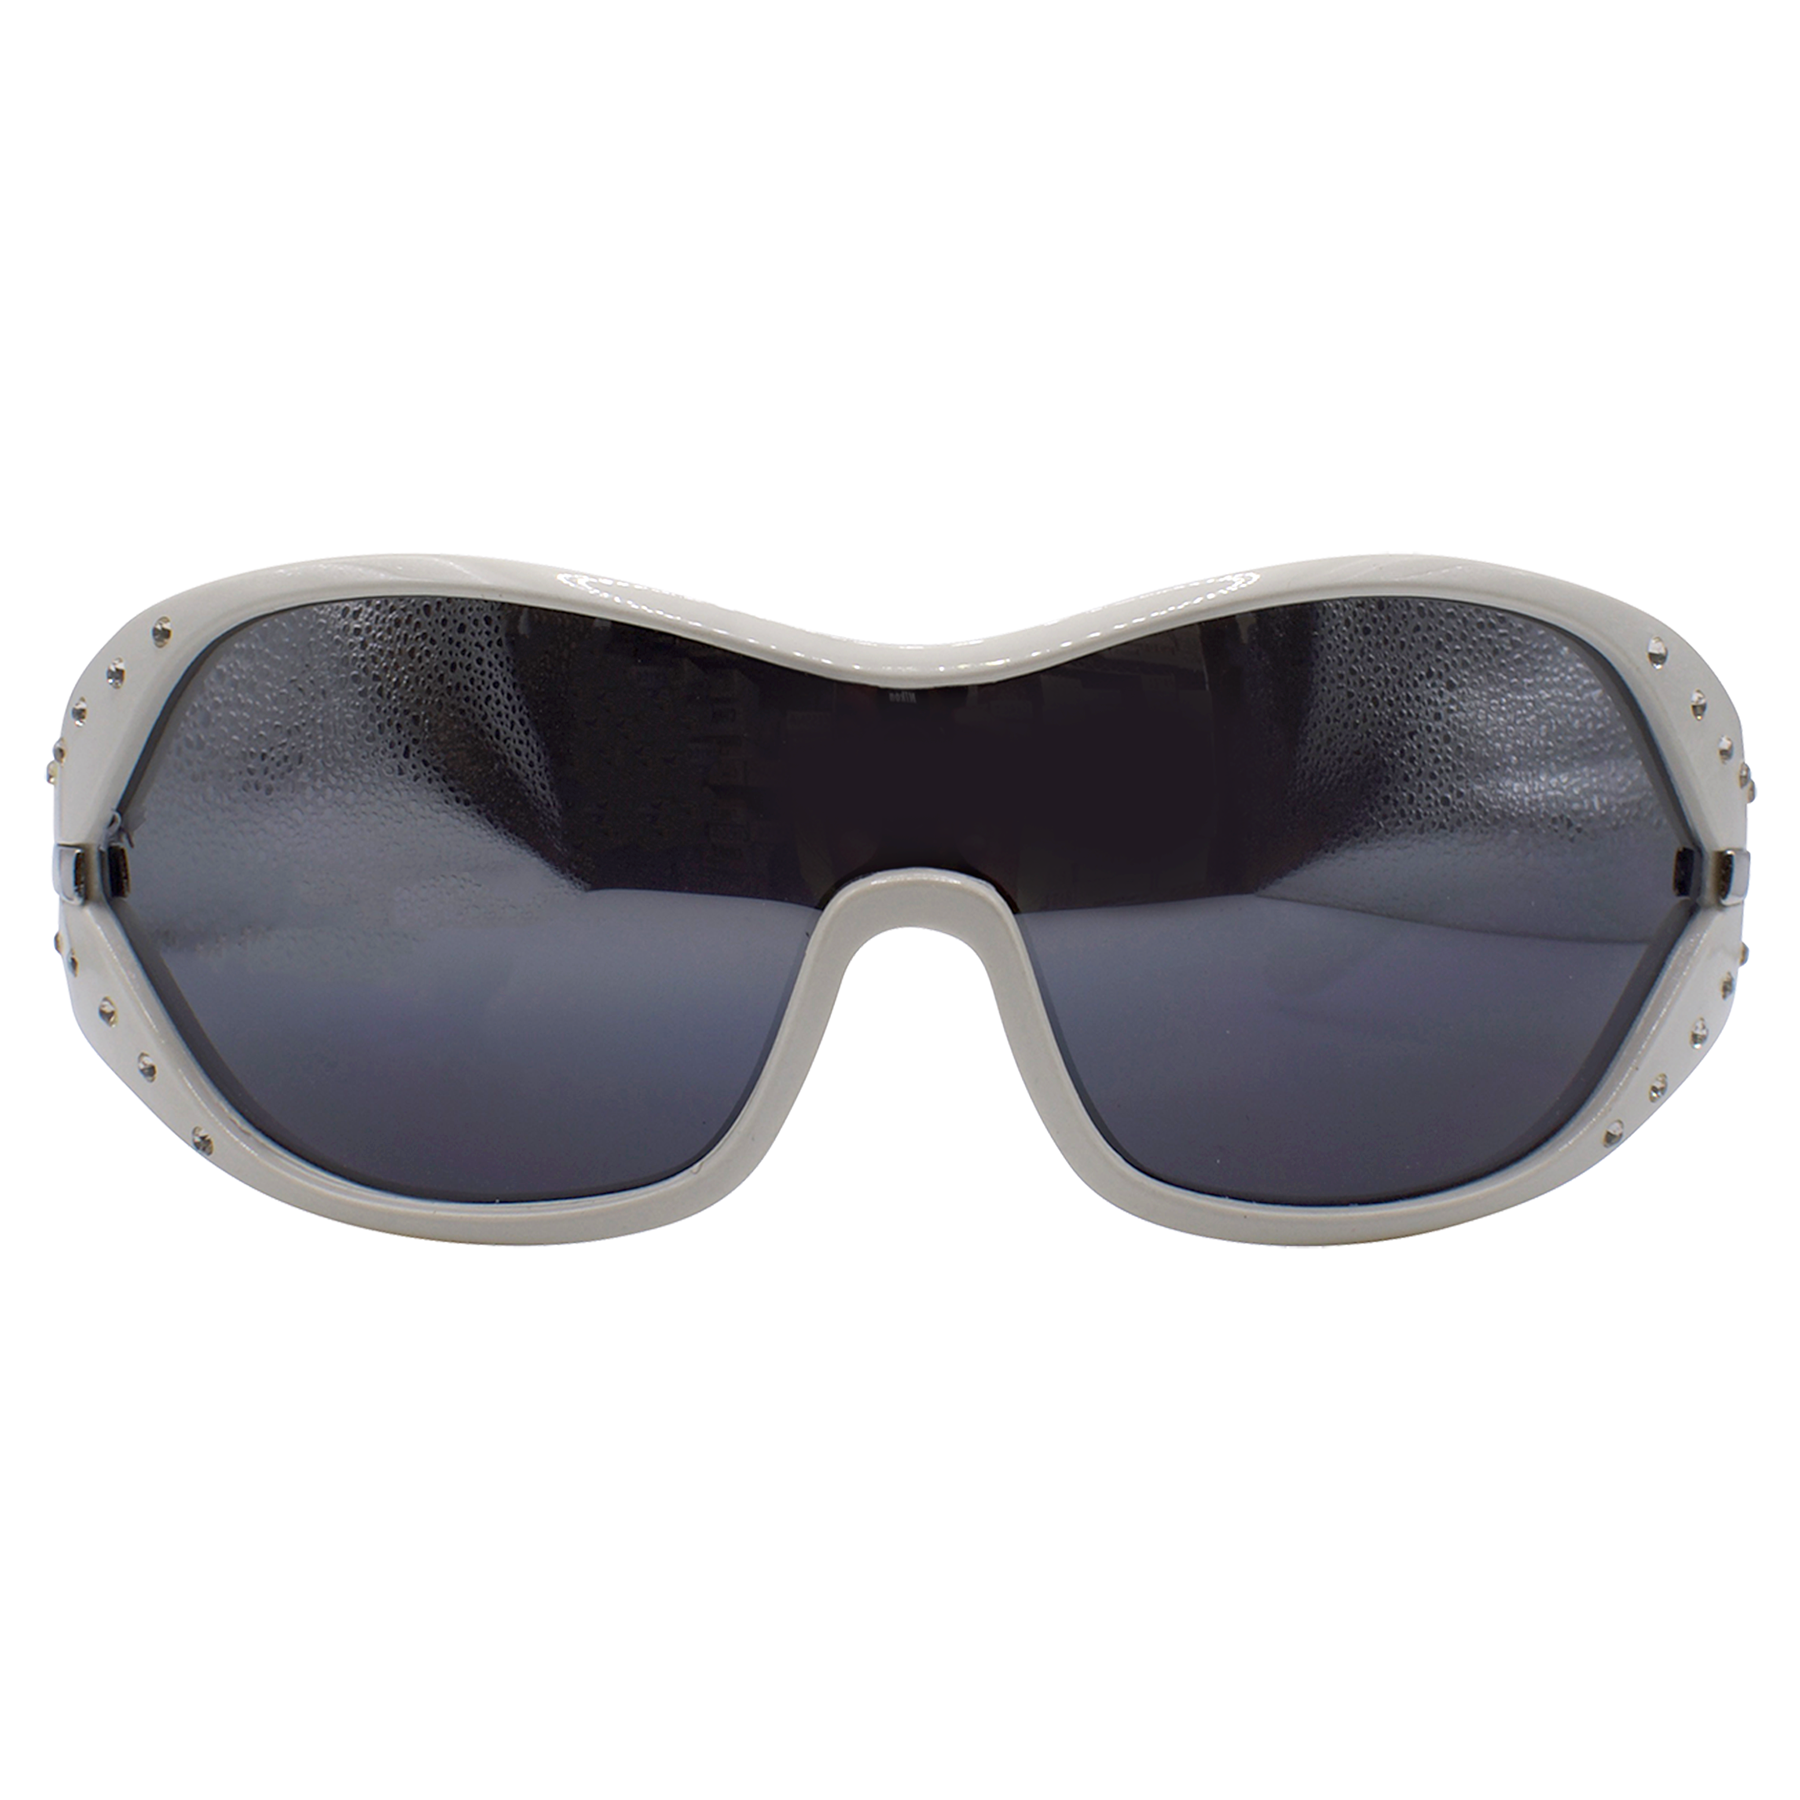 FUTURE Shield Sunglasses